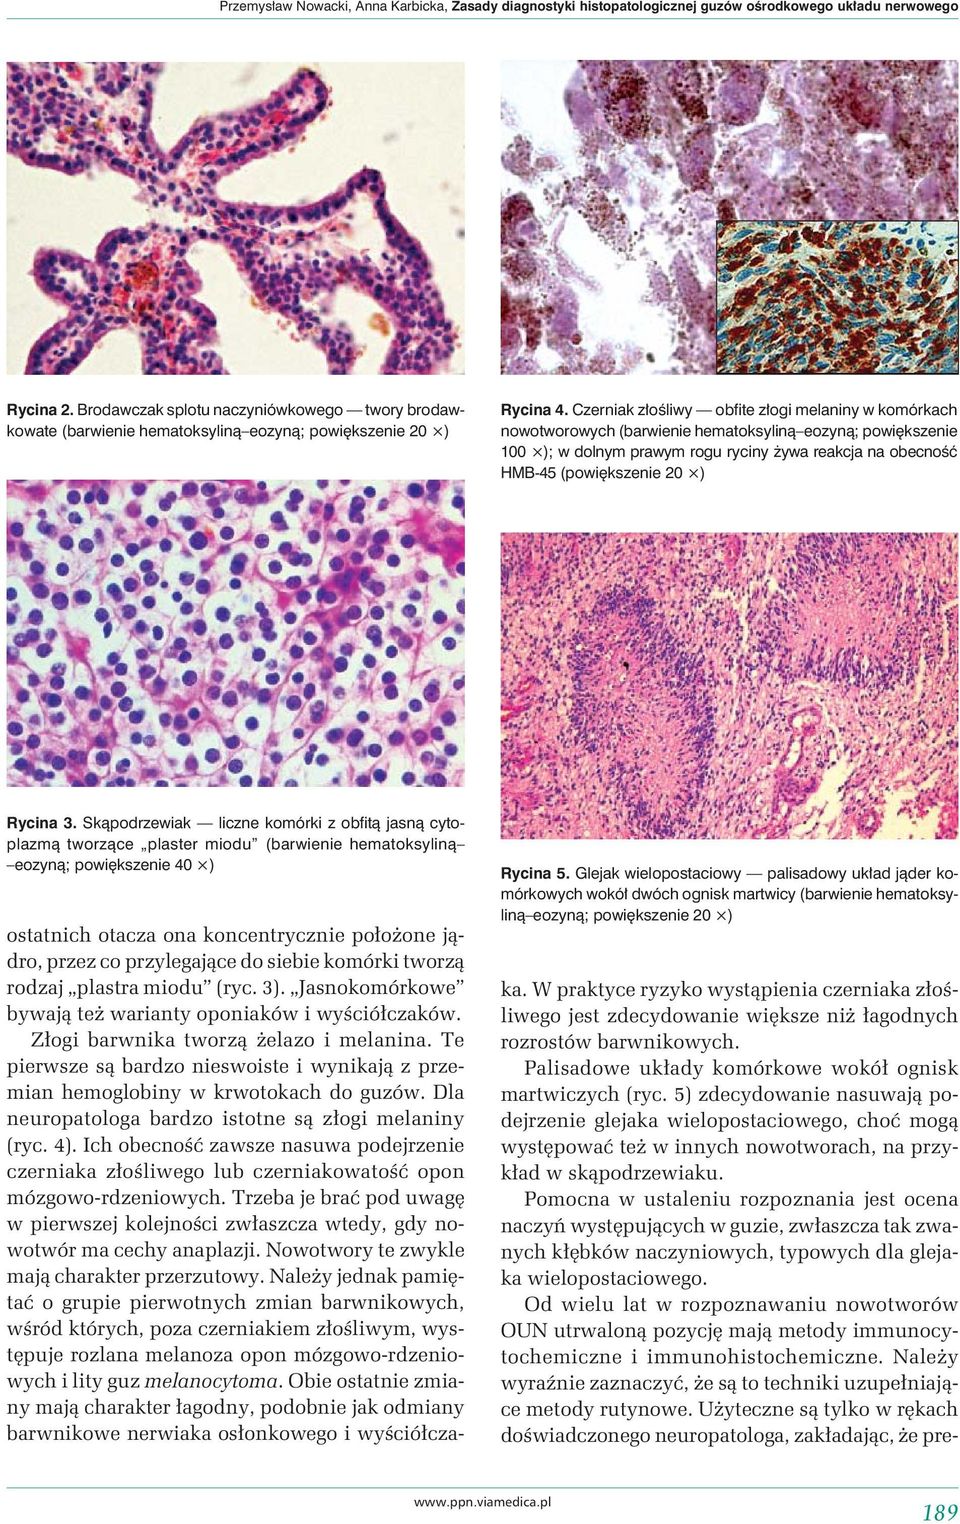 Czerniak złośliwy obfite złogi melaniny w komórkach nowotworowych (barwienie hematoksyliną eozyną; powiększenie 100 ); w dolnym prawym rogu ryciny żywa reakcja na obecność HMB-45 (powiększenie 20 )